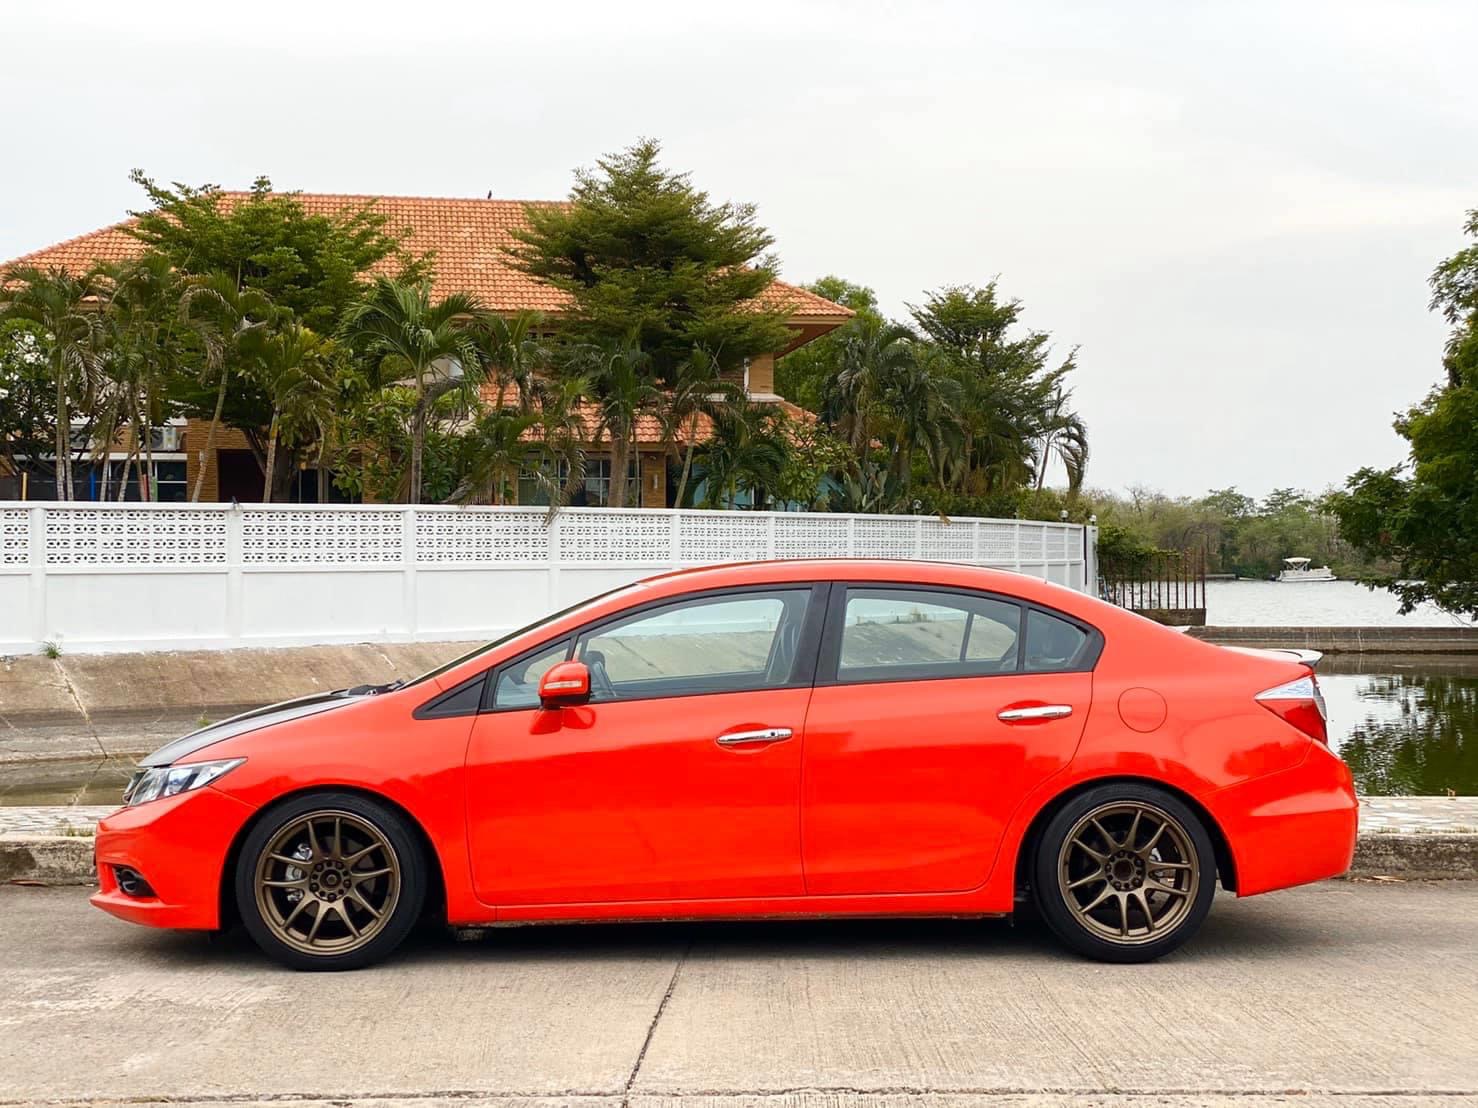 Honda Civic FB ปี 2012 สีส้ม